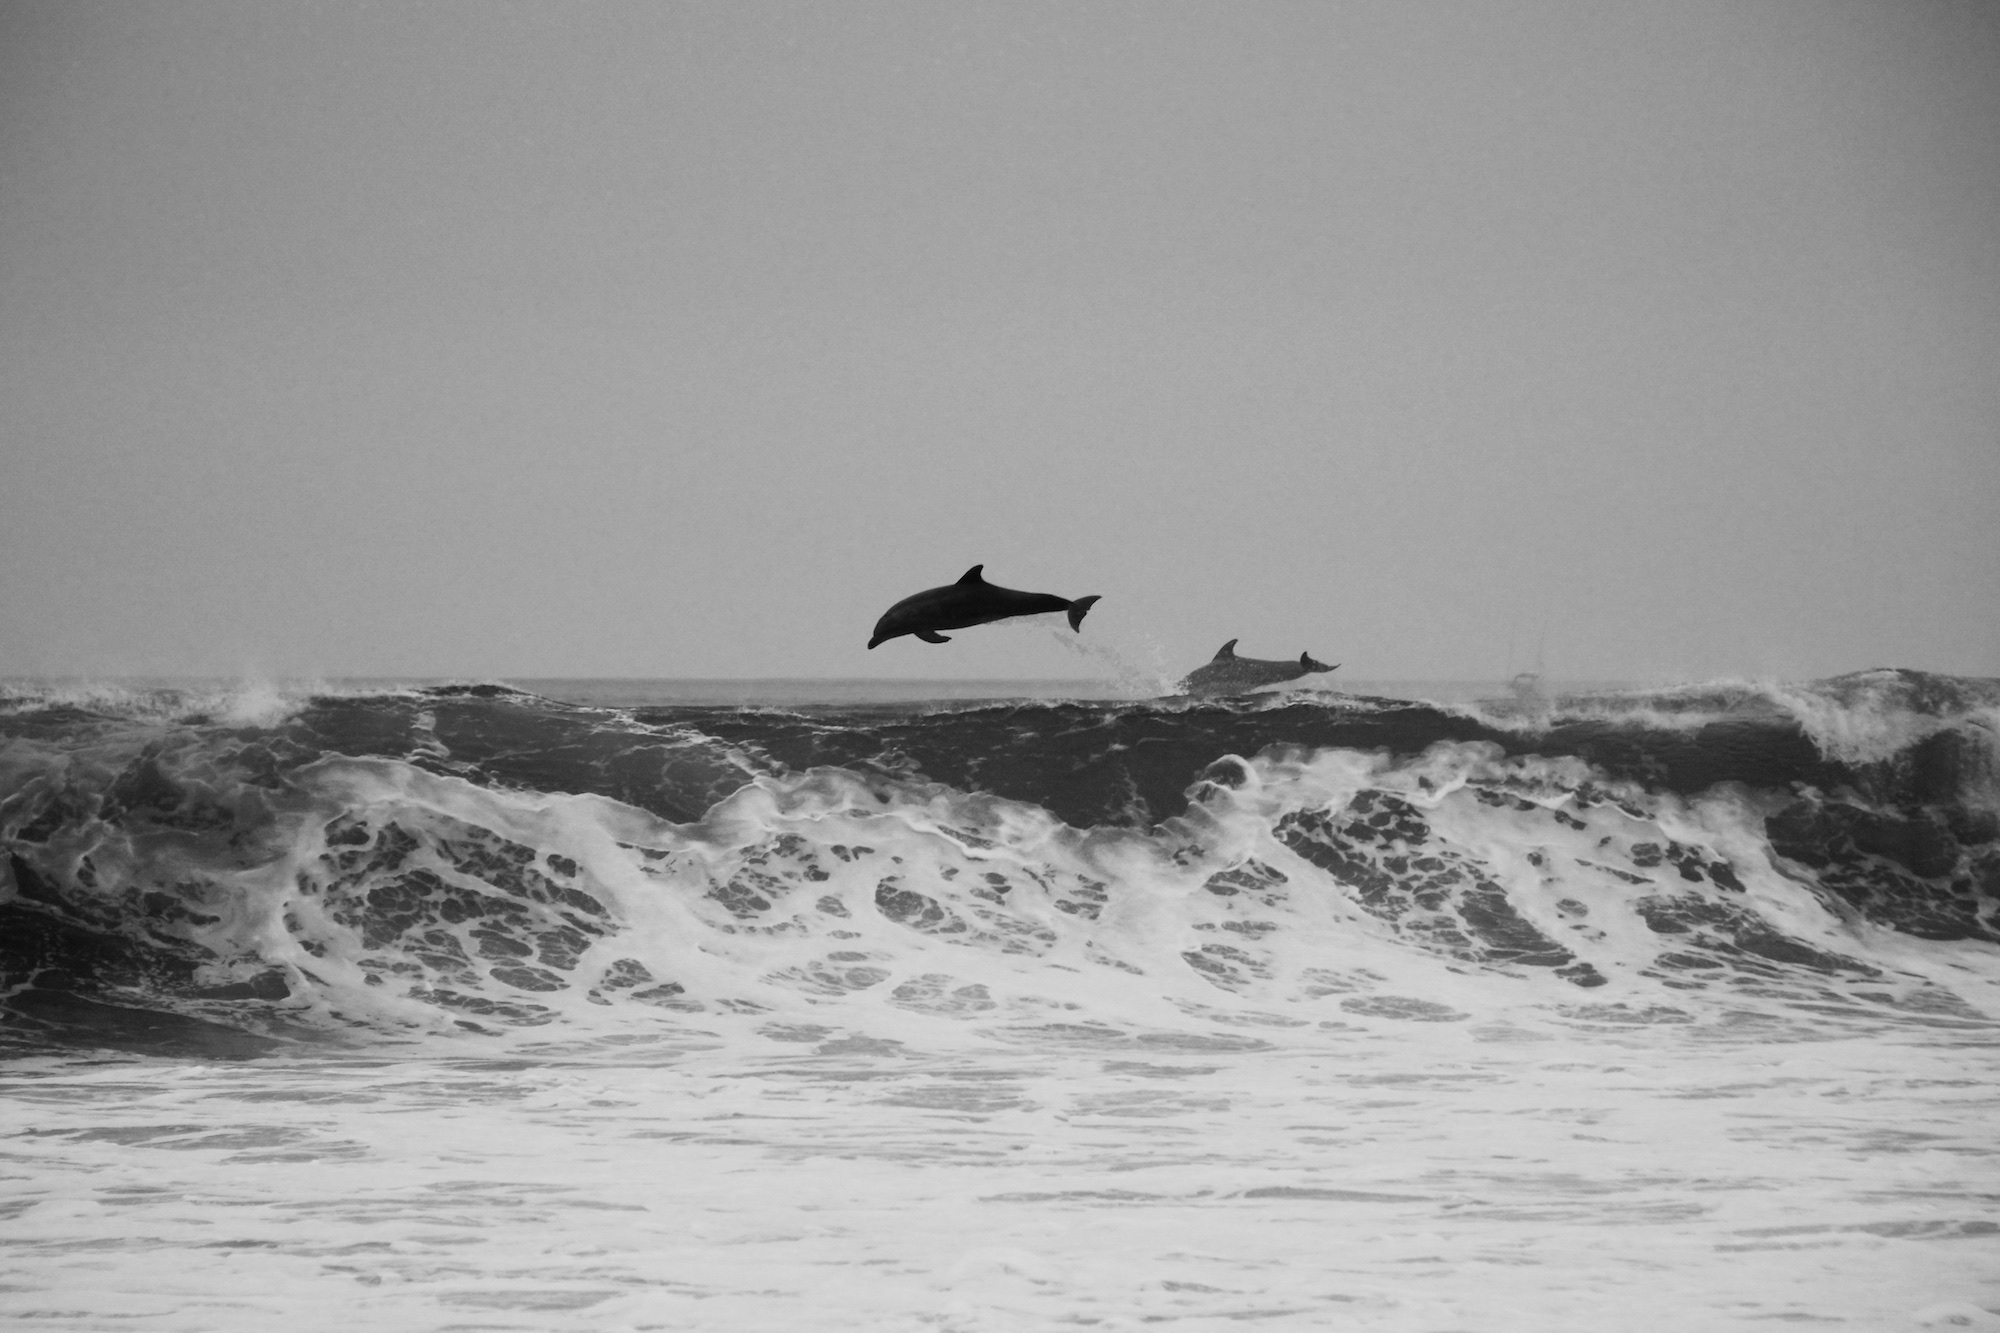 海豚在岸边跃出水面